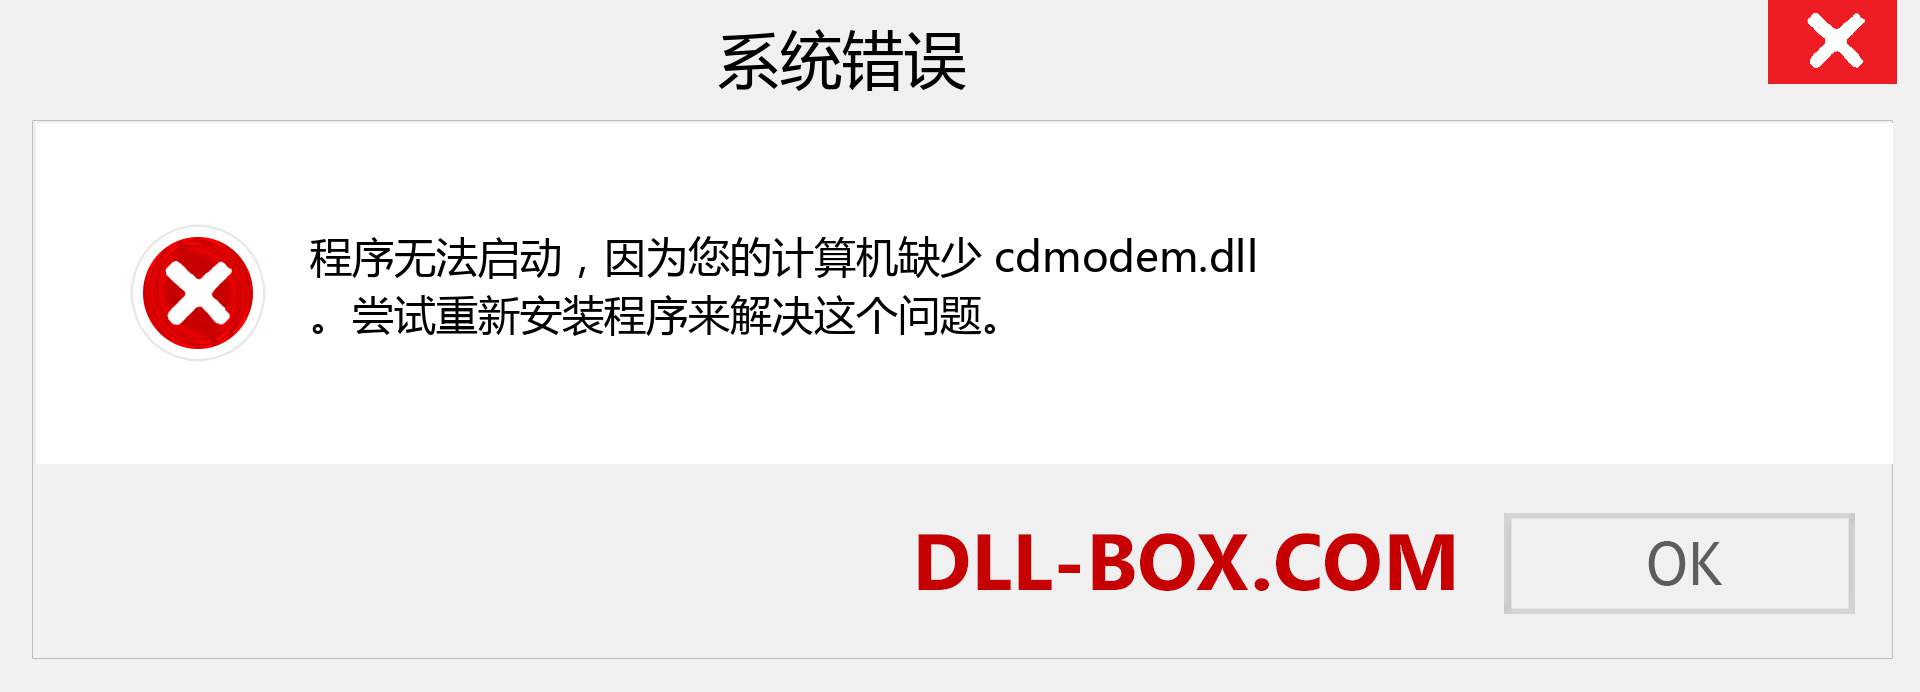 cdmodem.dll 文件丢失？。 适用于 Windows 7、8、10 的下载 - 修复 Windows、照片、图像上的 cdmodem dll 丢失错误